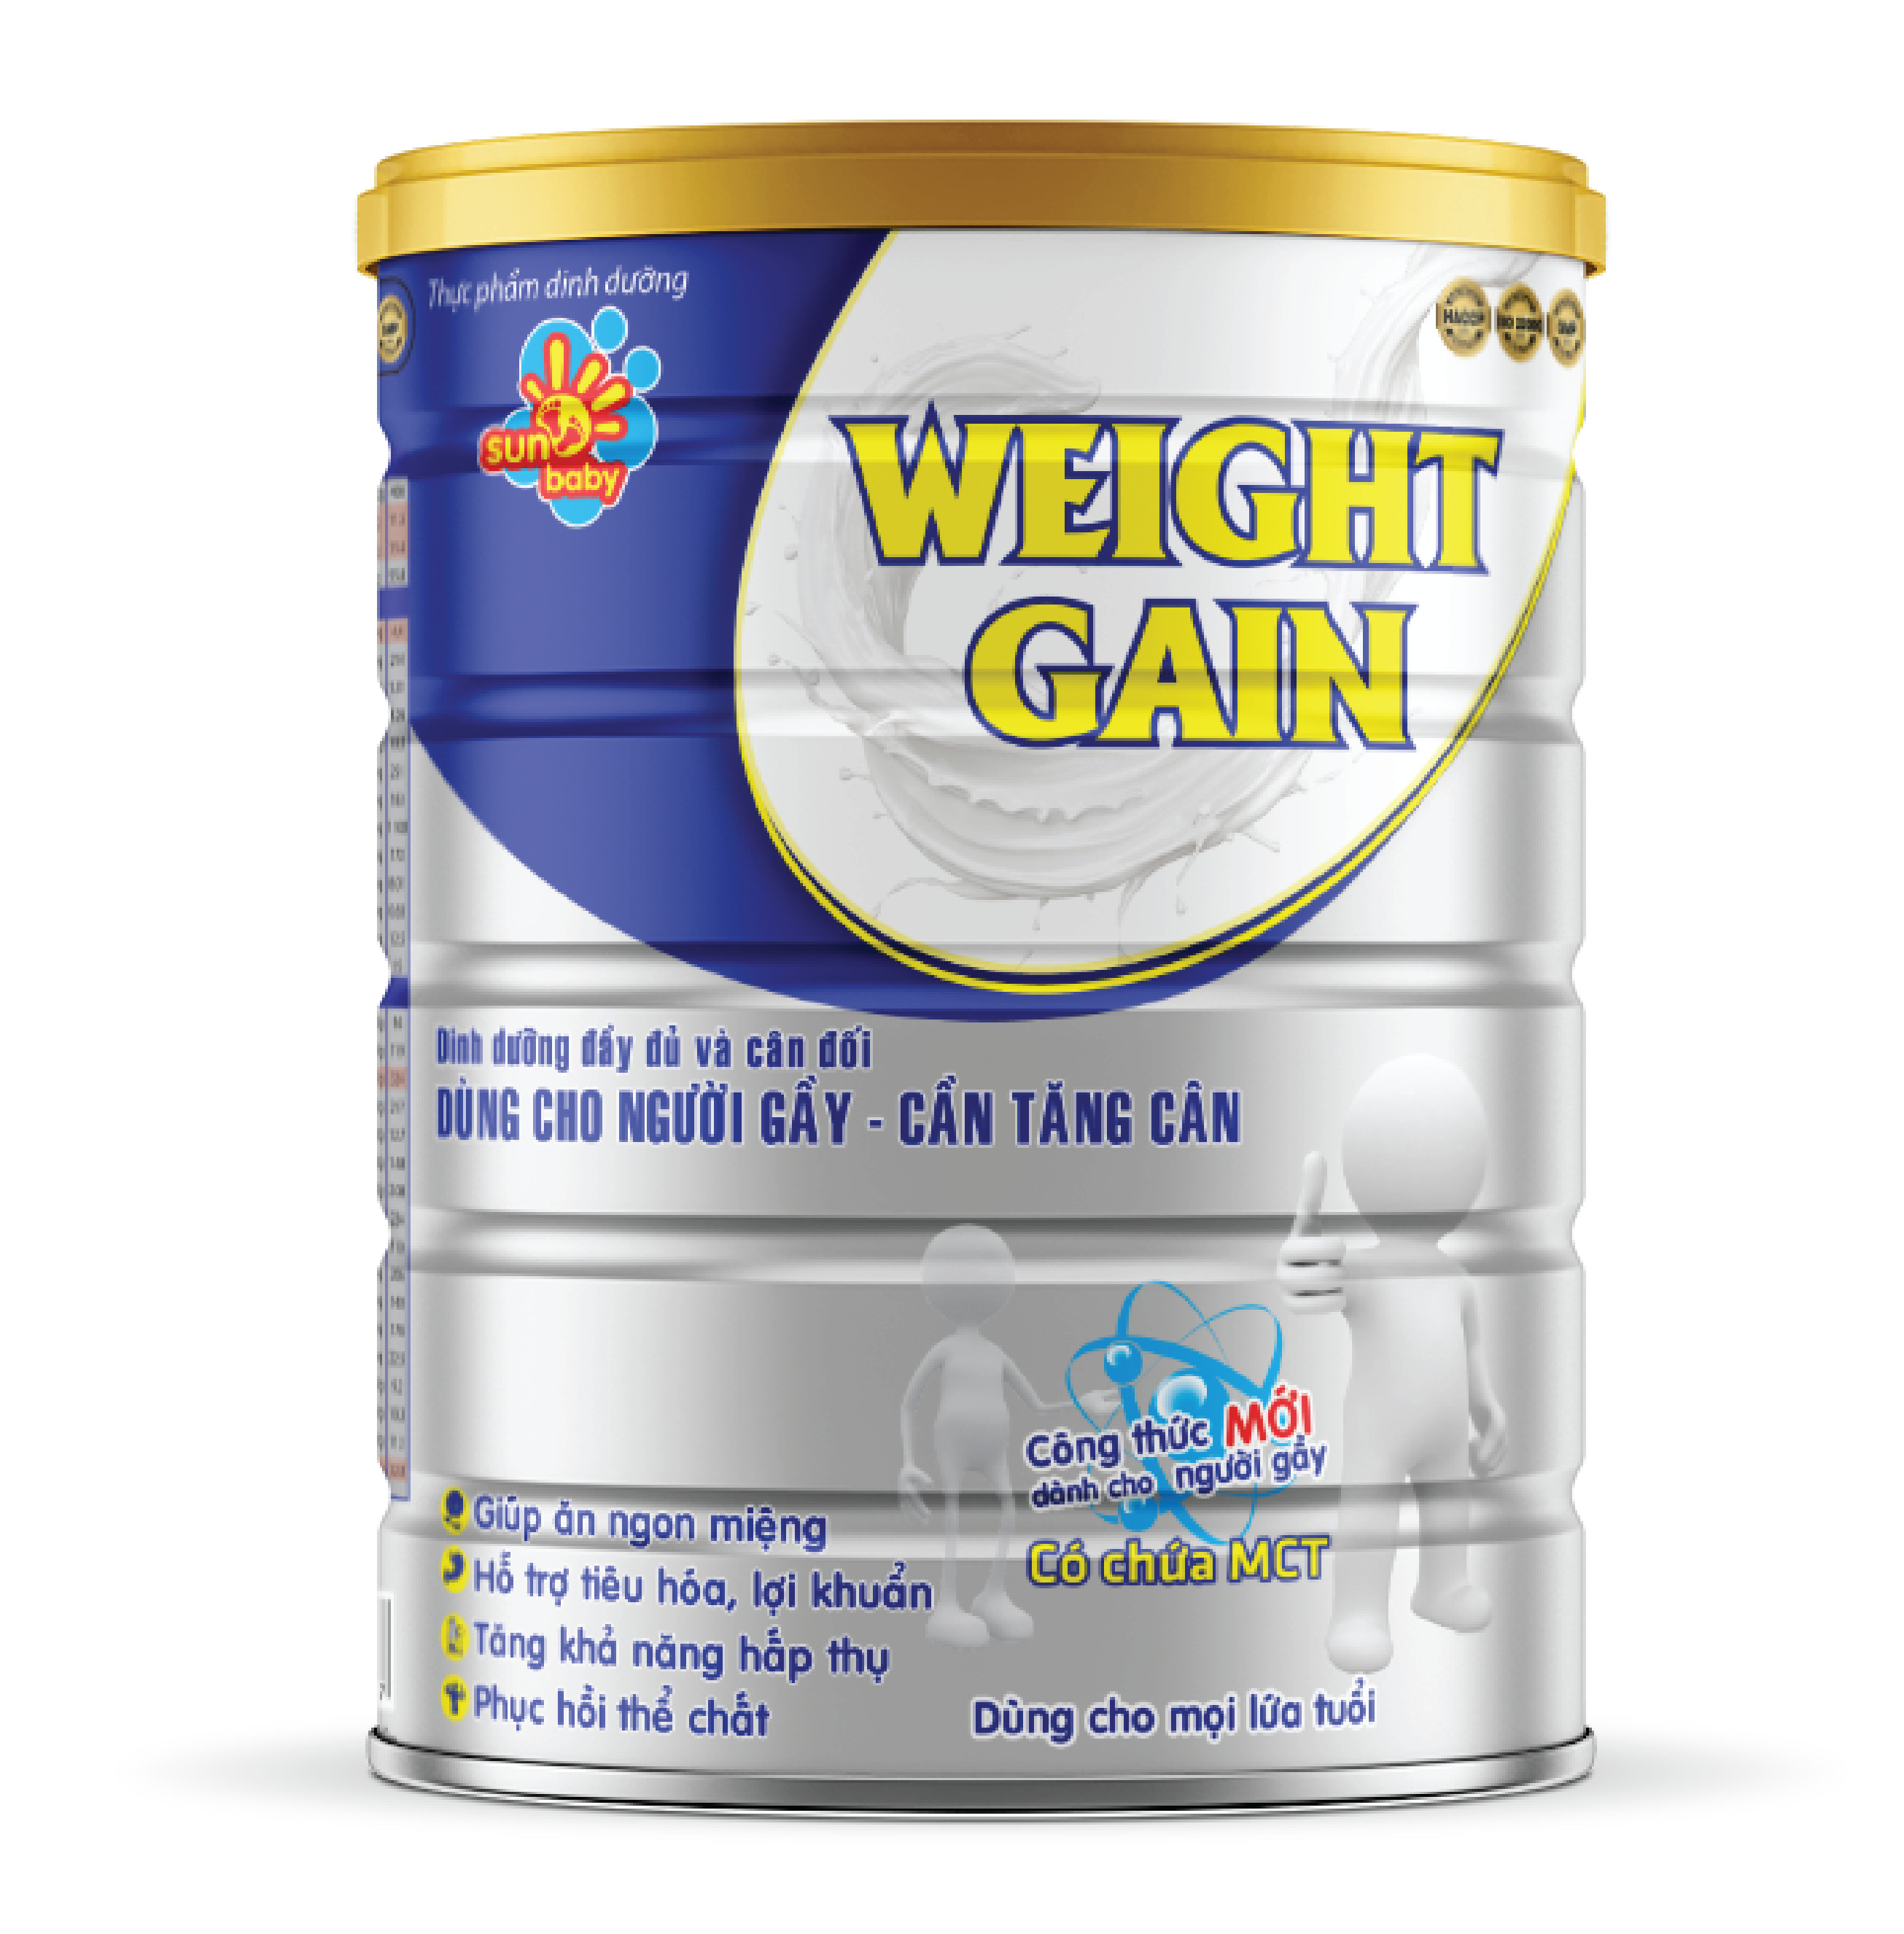 [Tặng cân sức khỏe] Combo 2 lon sữa Weight Gain dinh dưỡng dành cho người gầy 900g Sunbaby